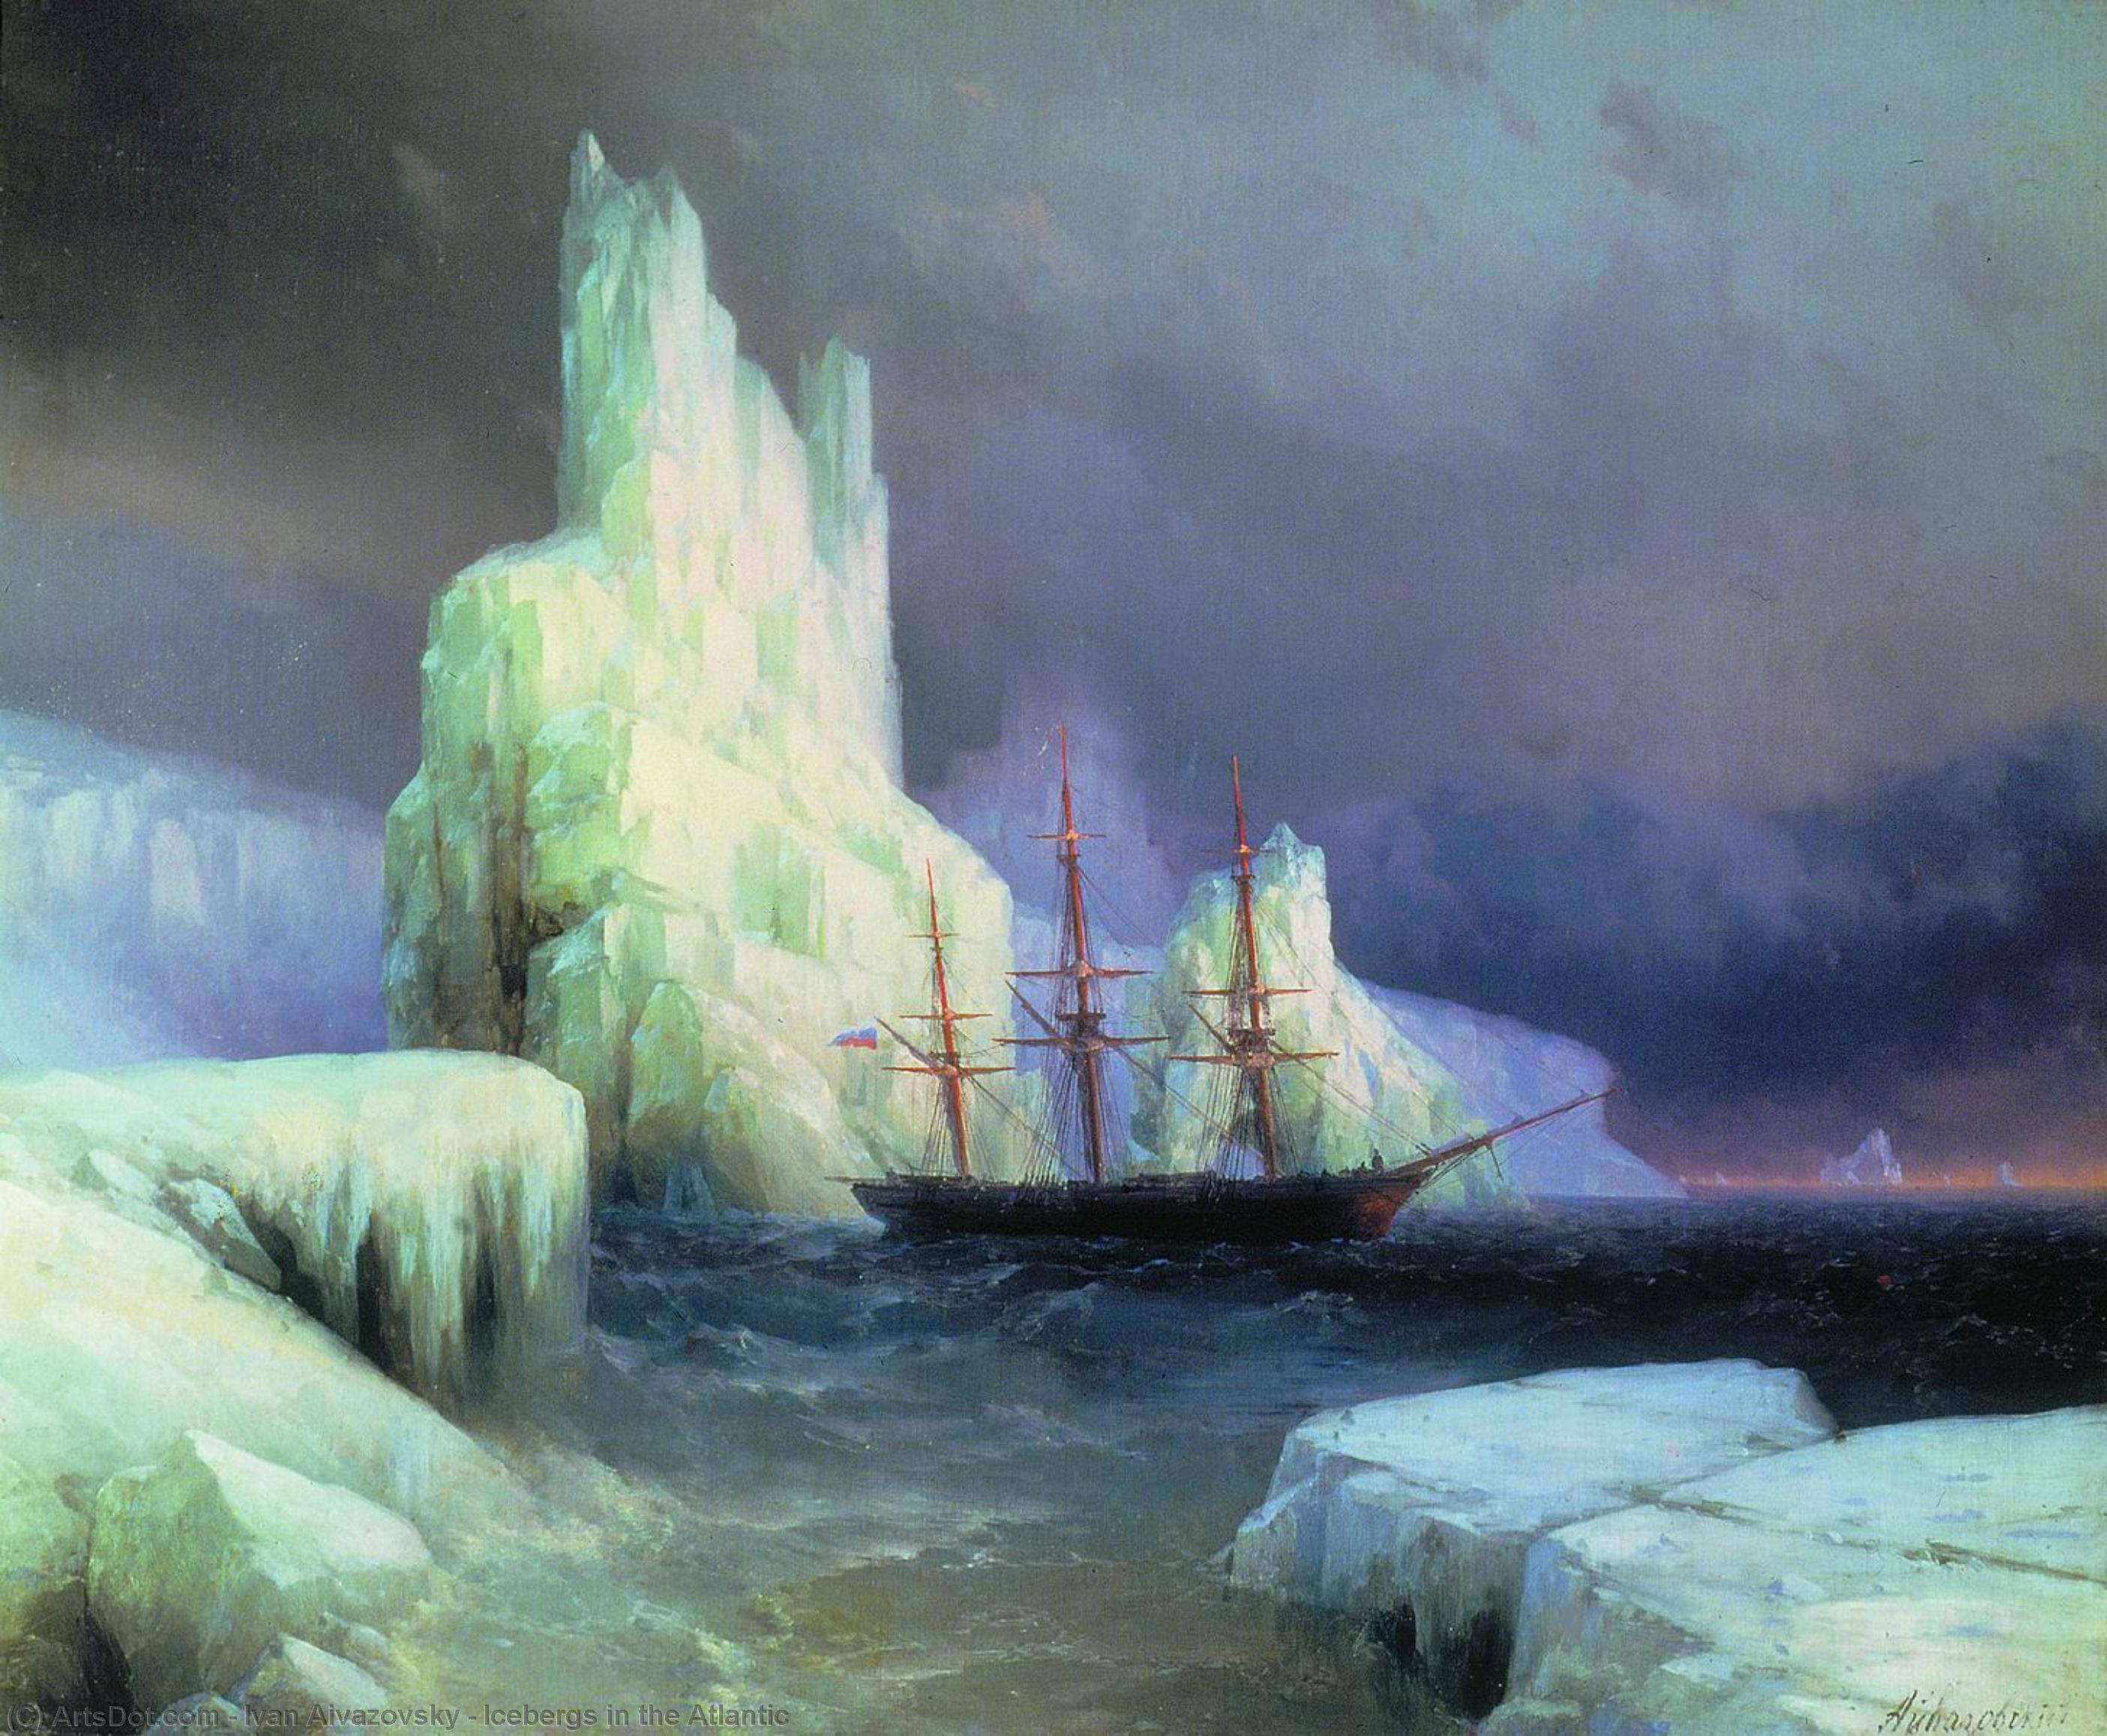 Wikioo.org - Bách khoa toàn thư về mỹ thuật - Vẽ tranh, Tác phẩm nghệ thuật Ivan Aivazovsky - Icebergs in the Atlantic